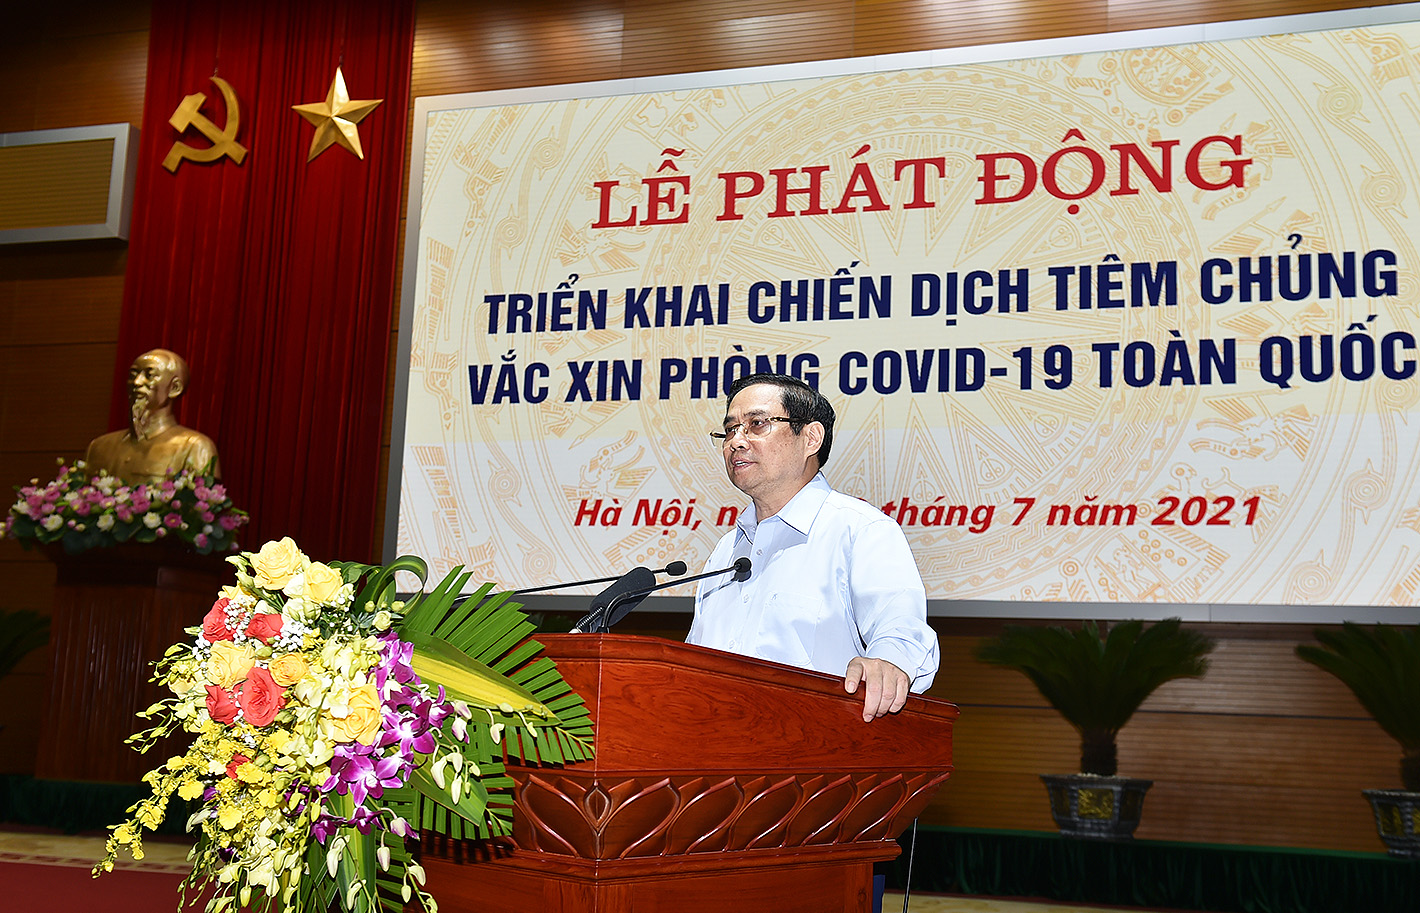 Thủ tướng Phạm Minh Chính dự lễ phát động triển khai chiến dịch tiêm chủng vaccine phòng COVID-19 trên toàn quốc. Sự kiện do Bộ Y tế phối hợp với Bộ Quốc phòng và các cơ quan liên quan tổ chức